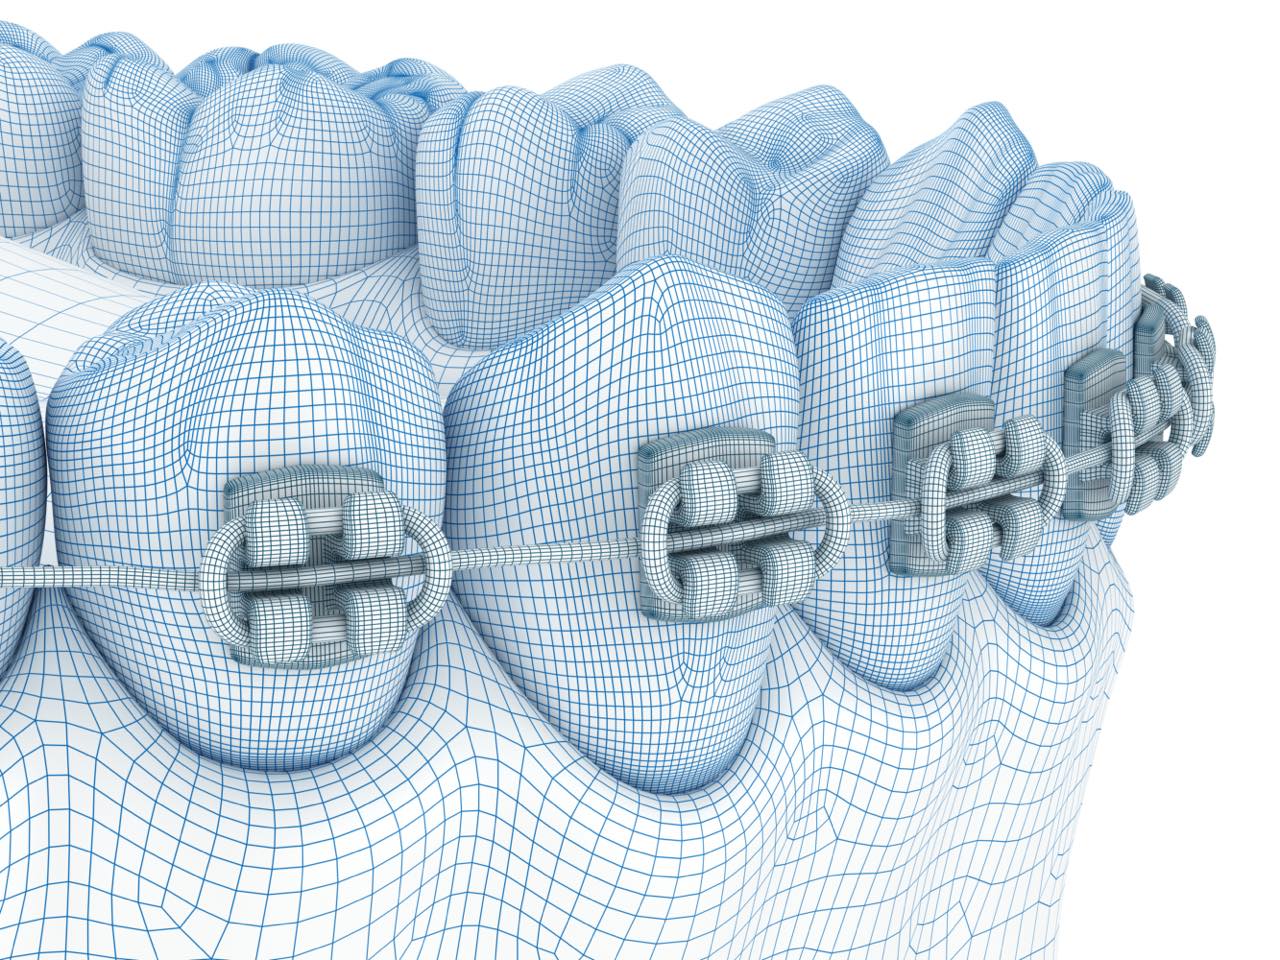 歯を早く移動させるコルチコトミーを併用した歯列矯正